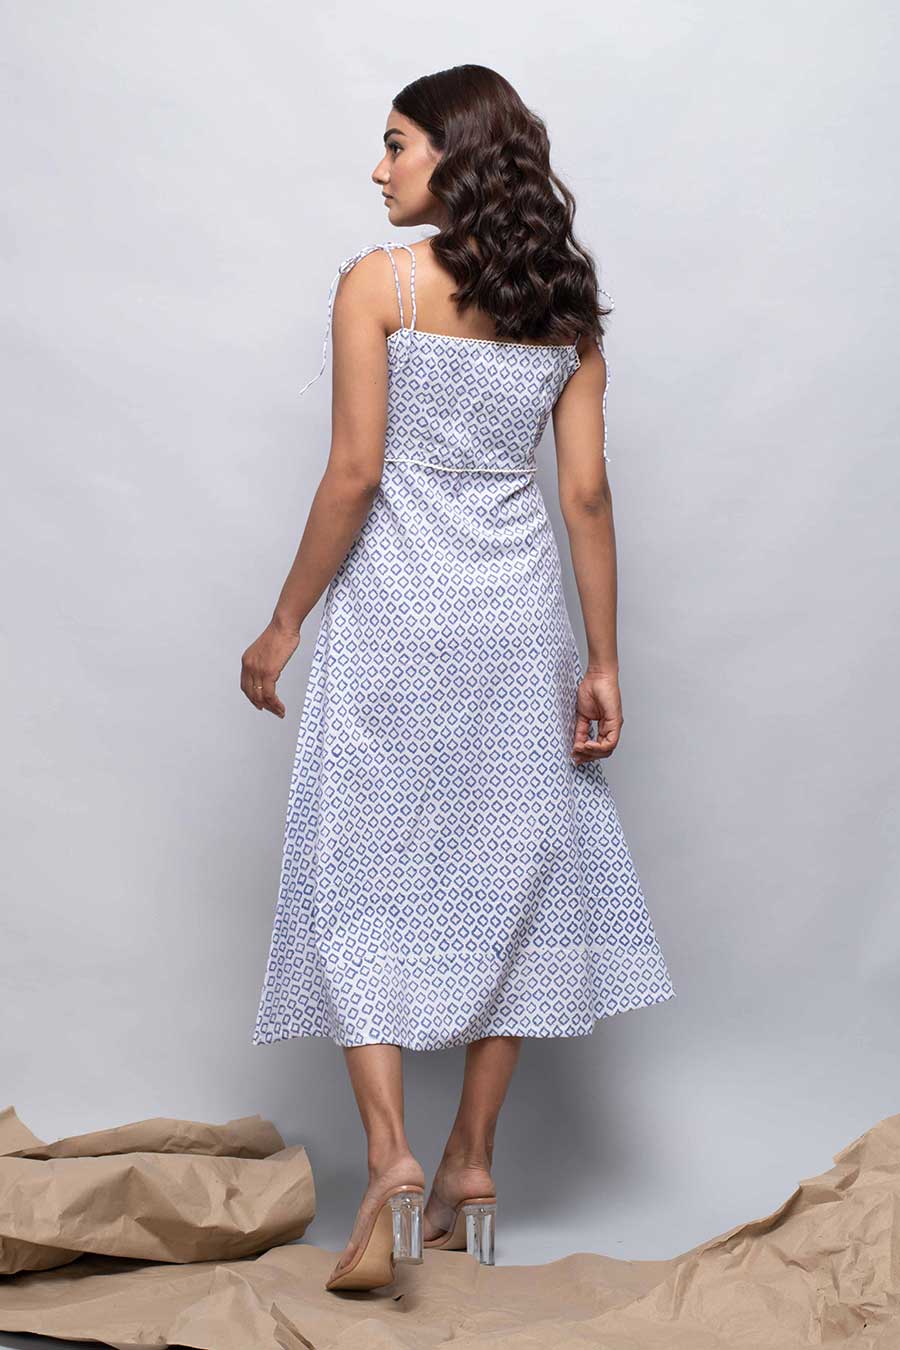 DAYLILY - Blue & White Printed Dress